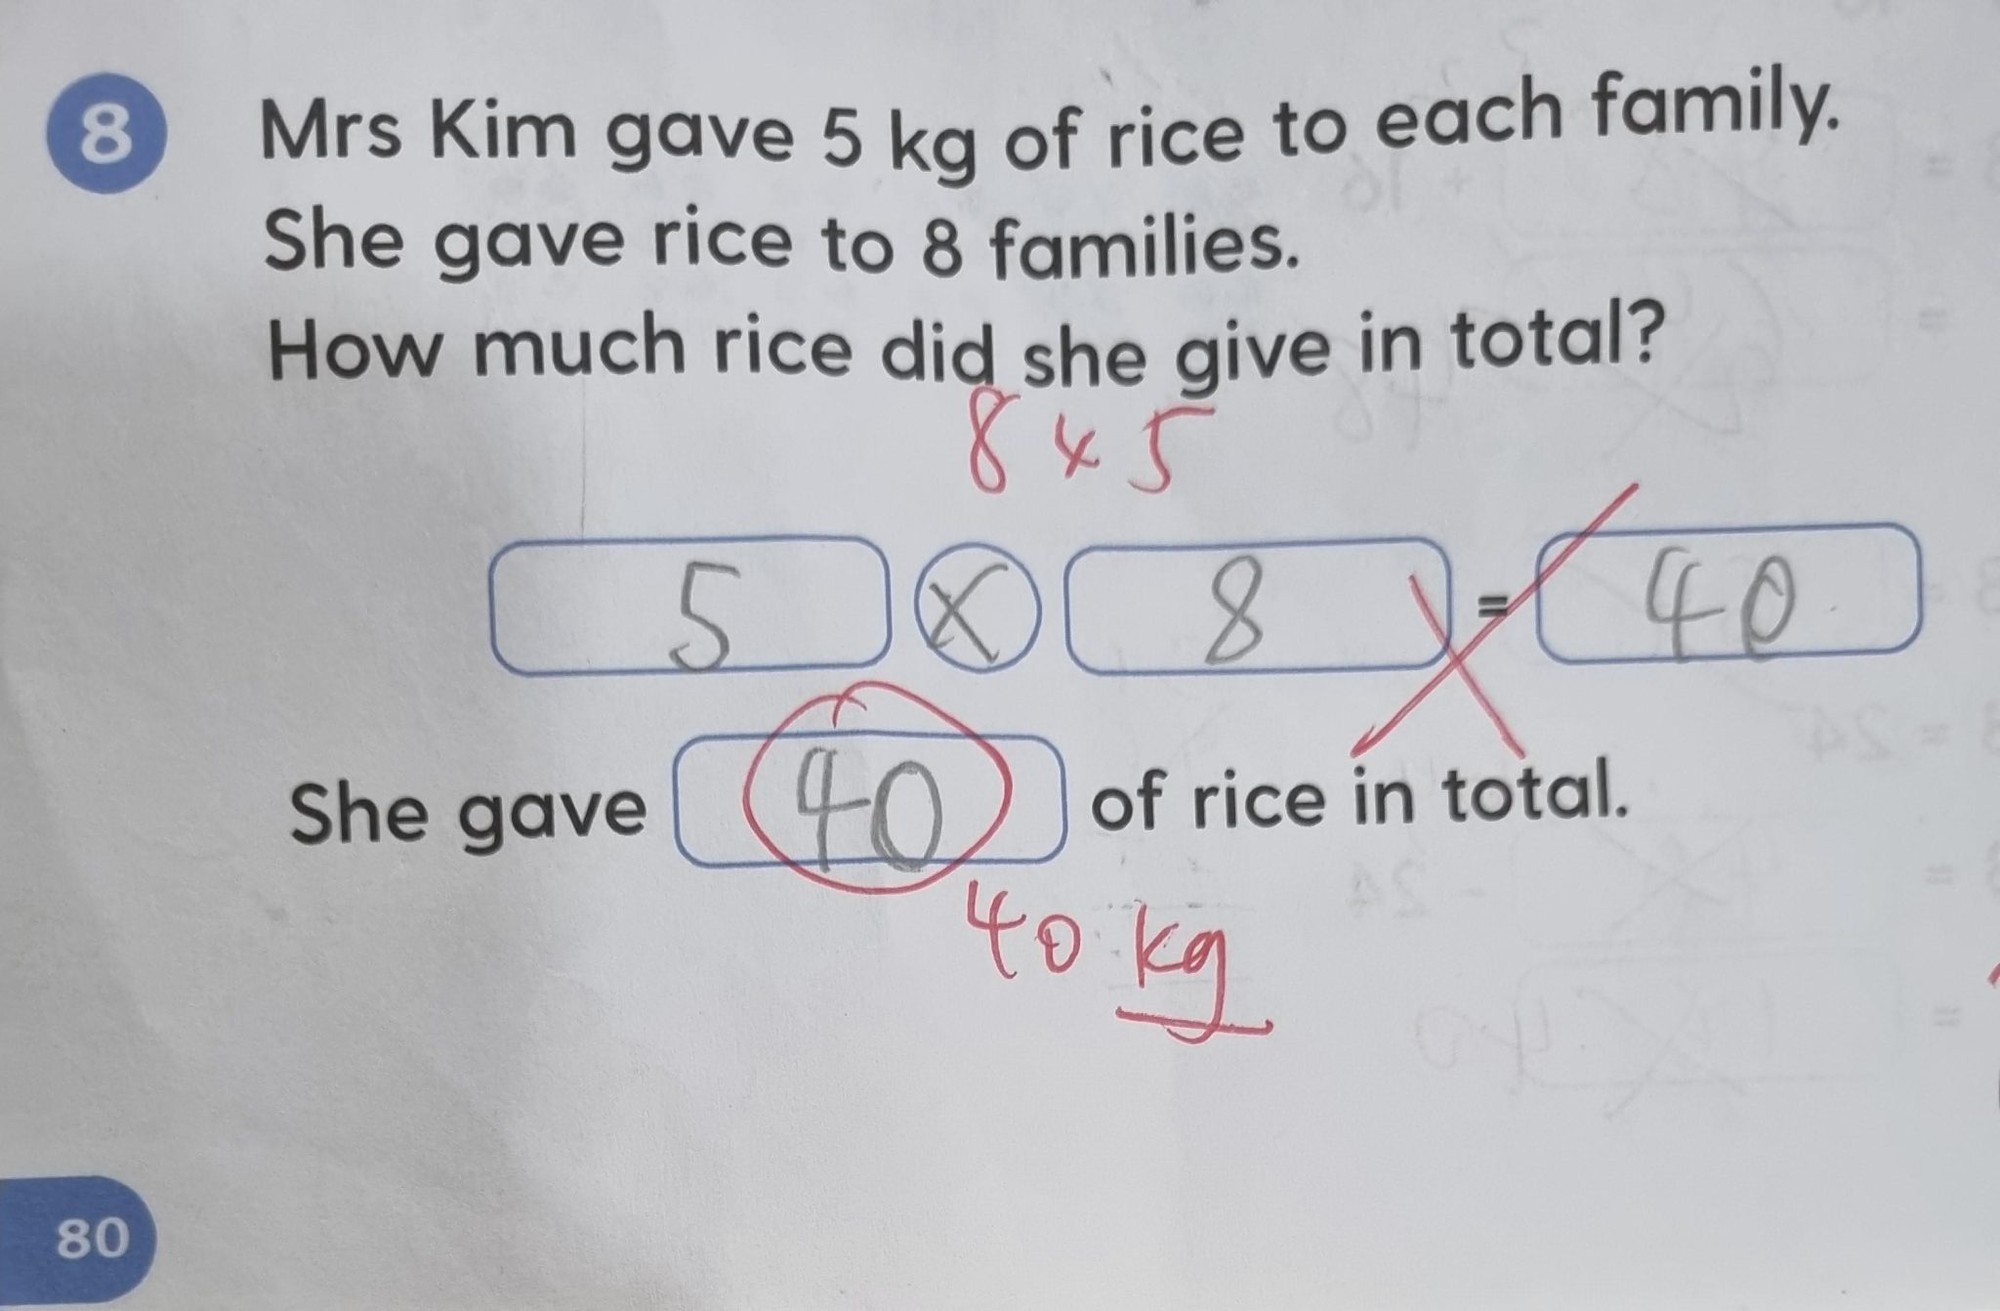 Học sinh viết 5 × 8 = 40 bị gạch sai, lời giải thích của giáo viên gây tranh luận - Ảnh 1.